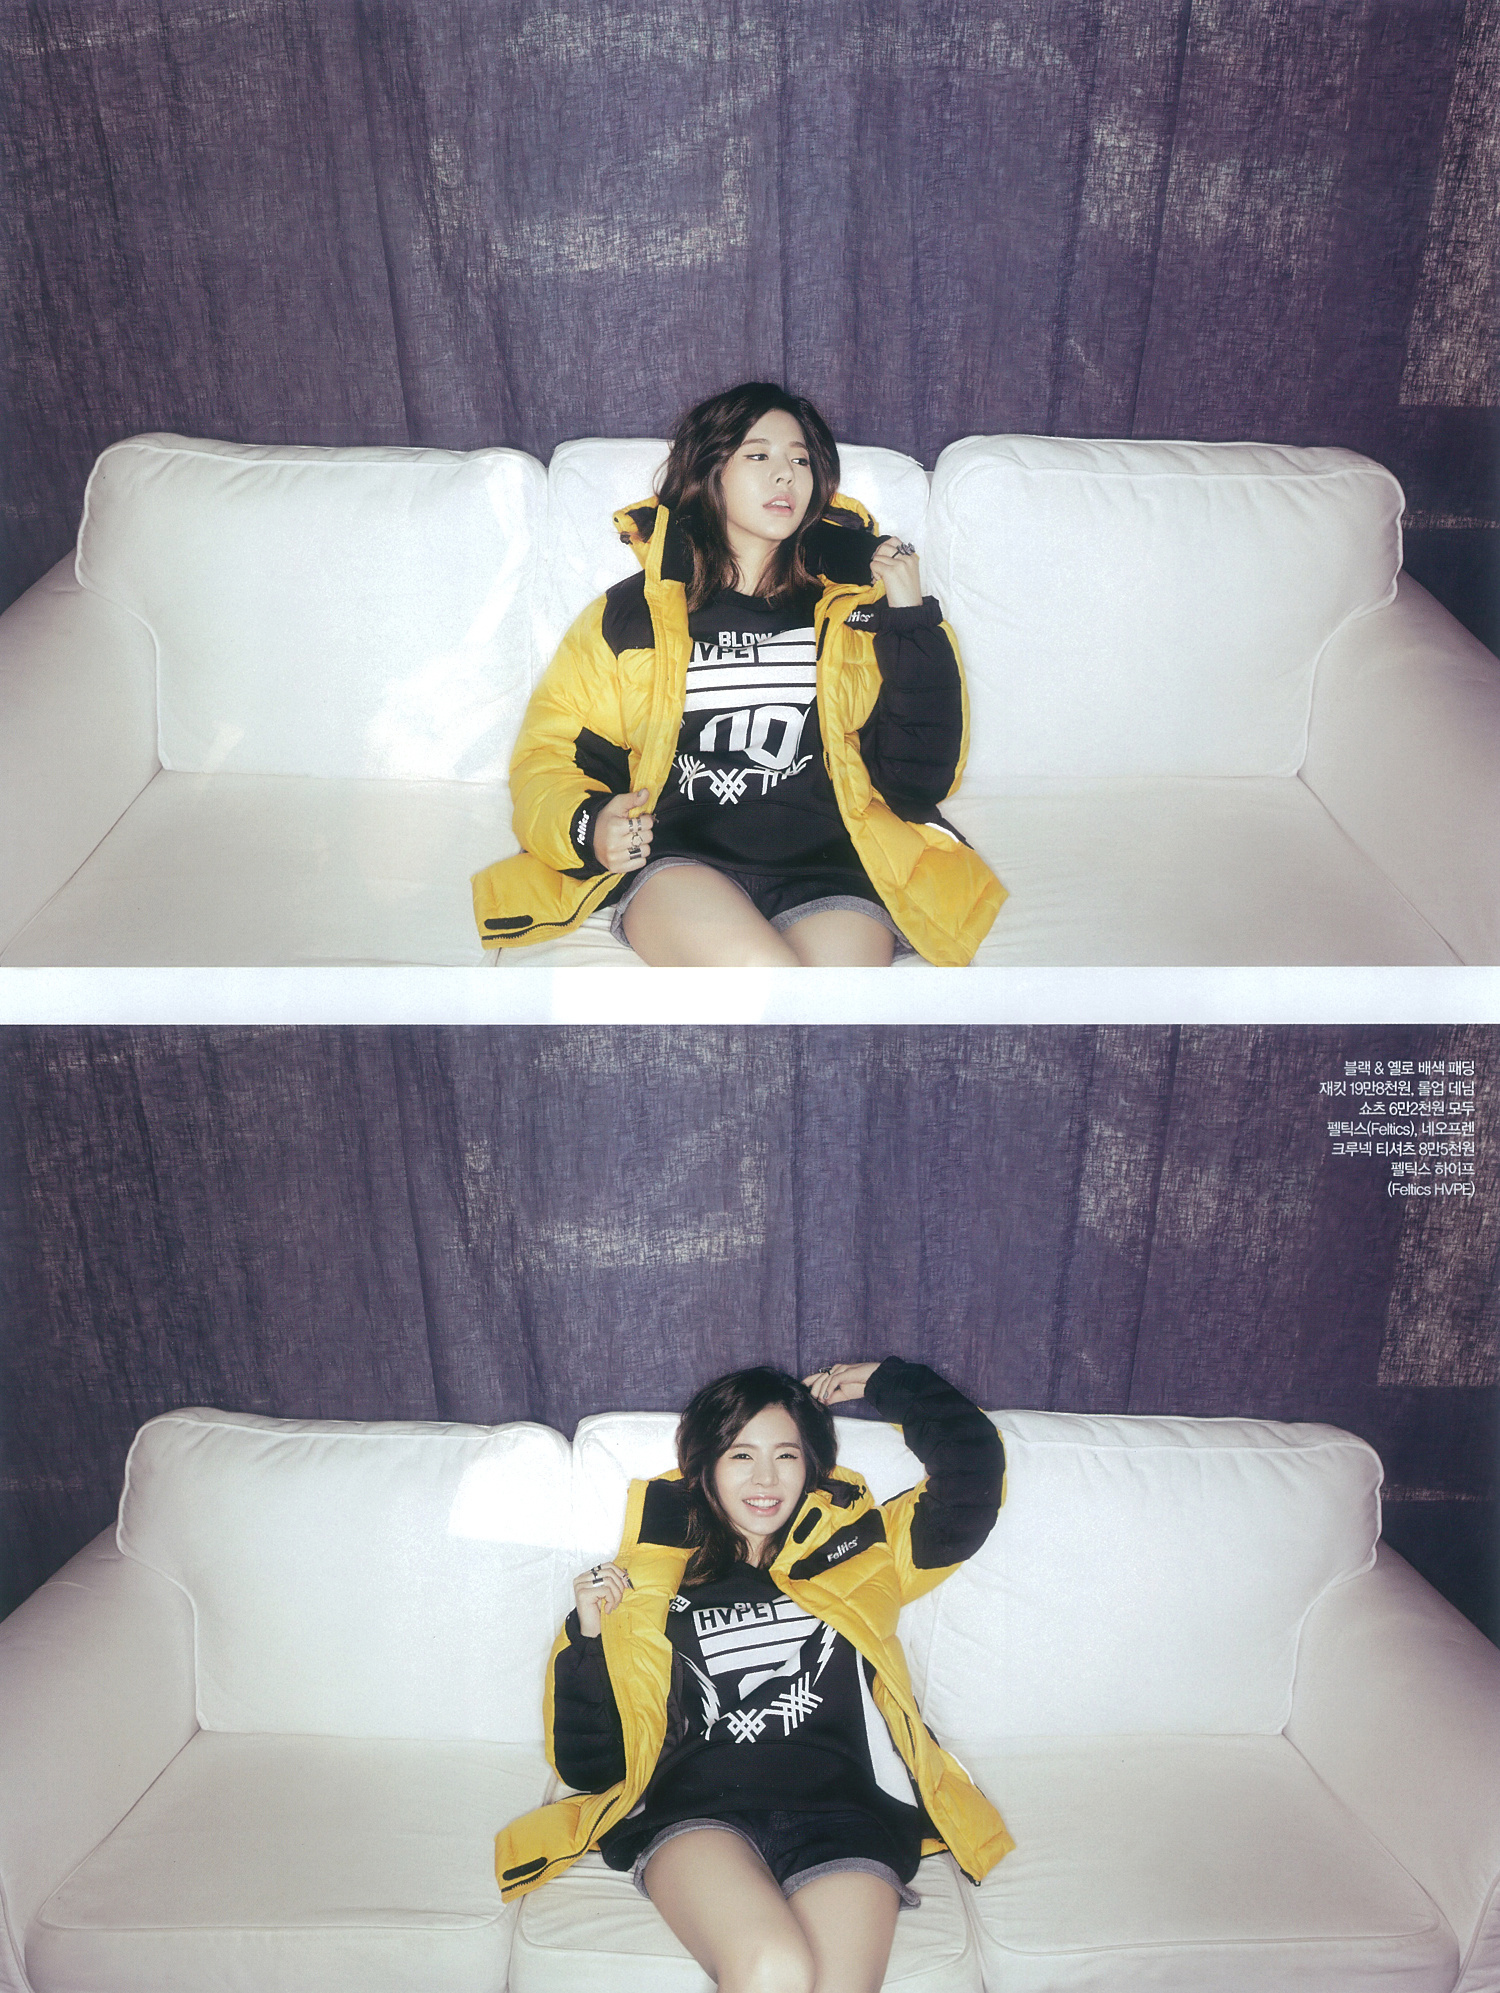 [PIC][19-11-2014]Sunny xuất hiện trên ấn phẩm tháng 12 của tạp chí "CECI" 15641558020_ac1270c506_o